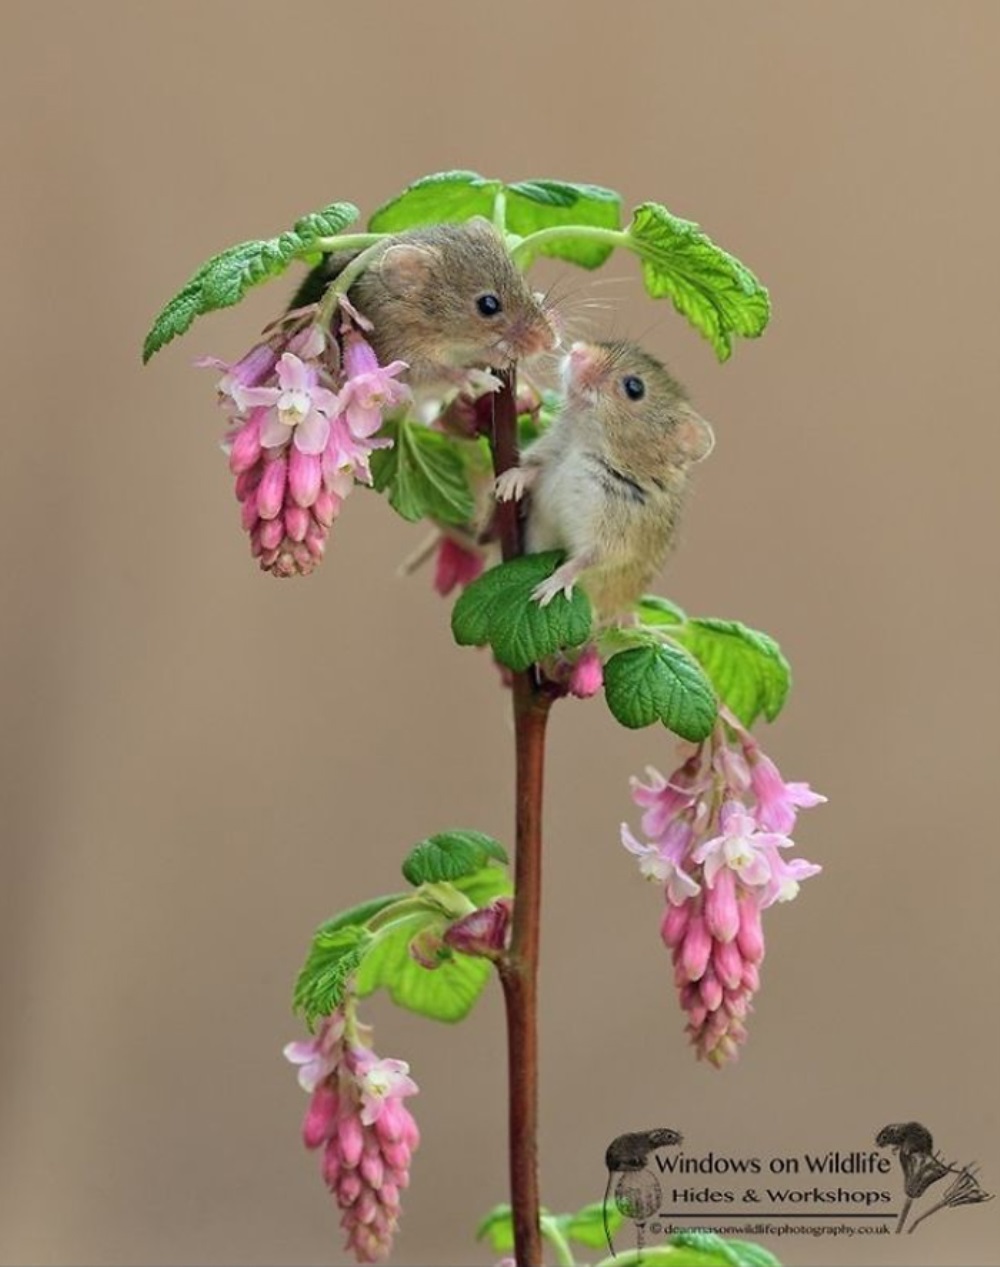 Το ποντίκι κάθεται σε ένα λουλούδι